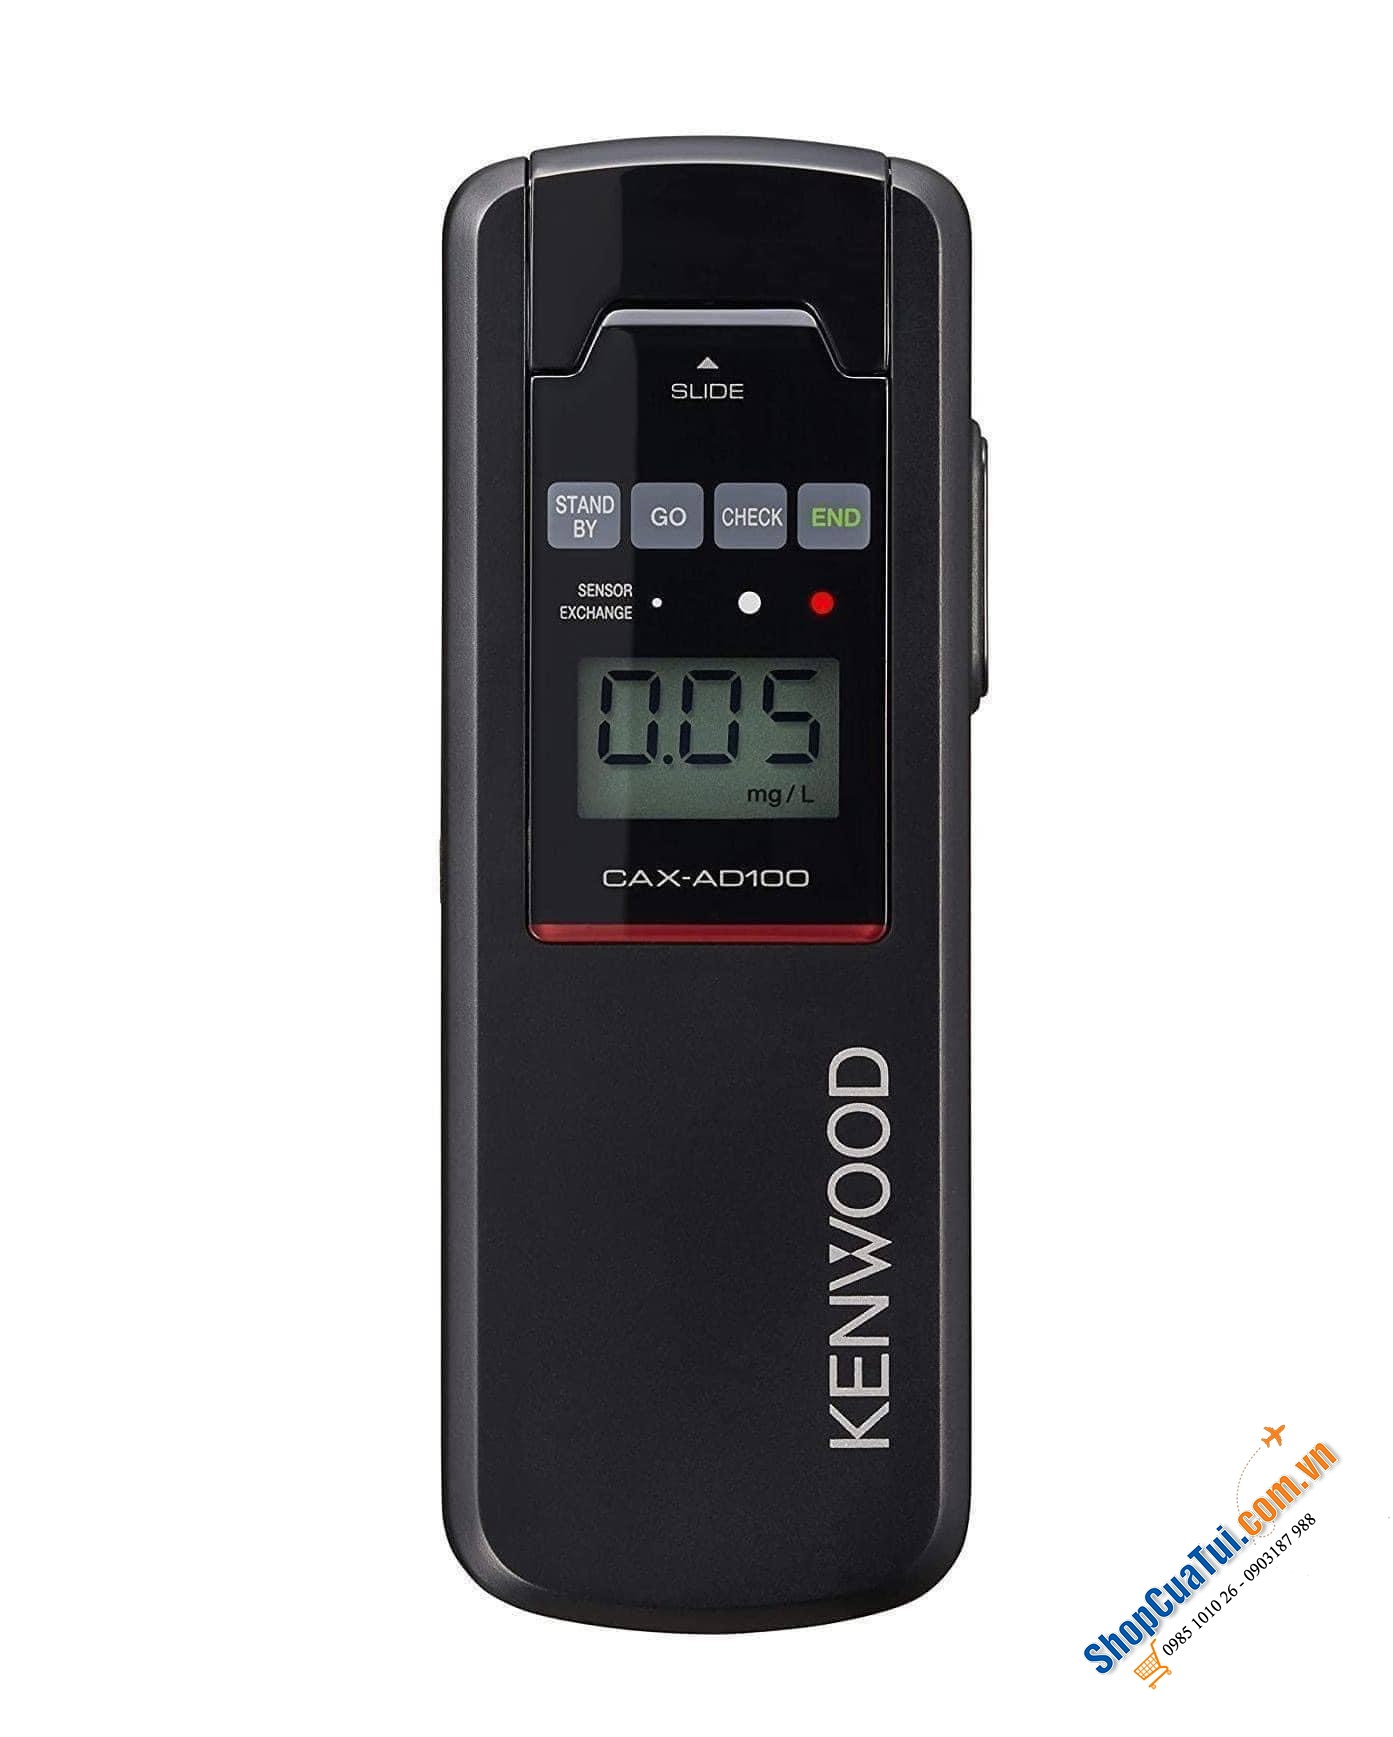 Máy đo nồng độ cồn Kenwood - Made in Japan - sử dụng cảm biến phát hiện nồng độ cồn có độ nhạy và độ chính xác cao